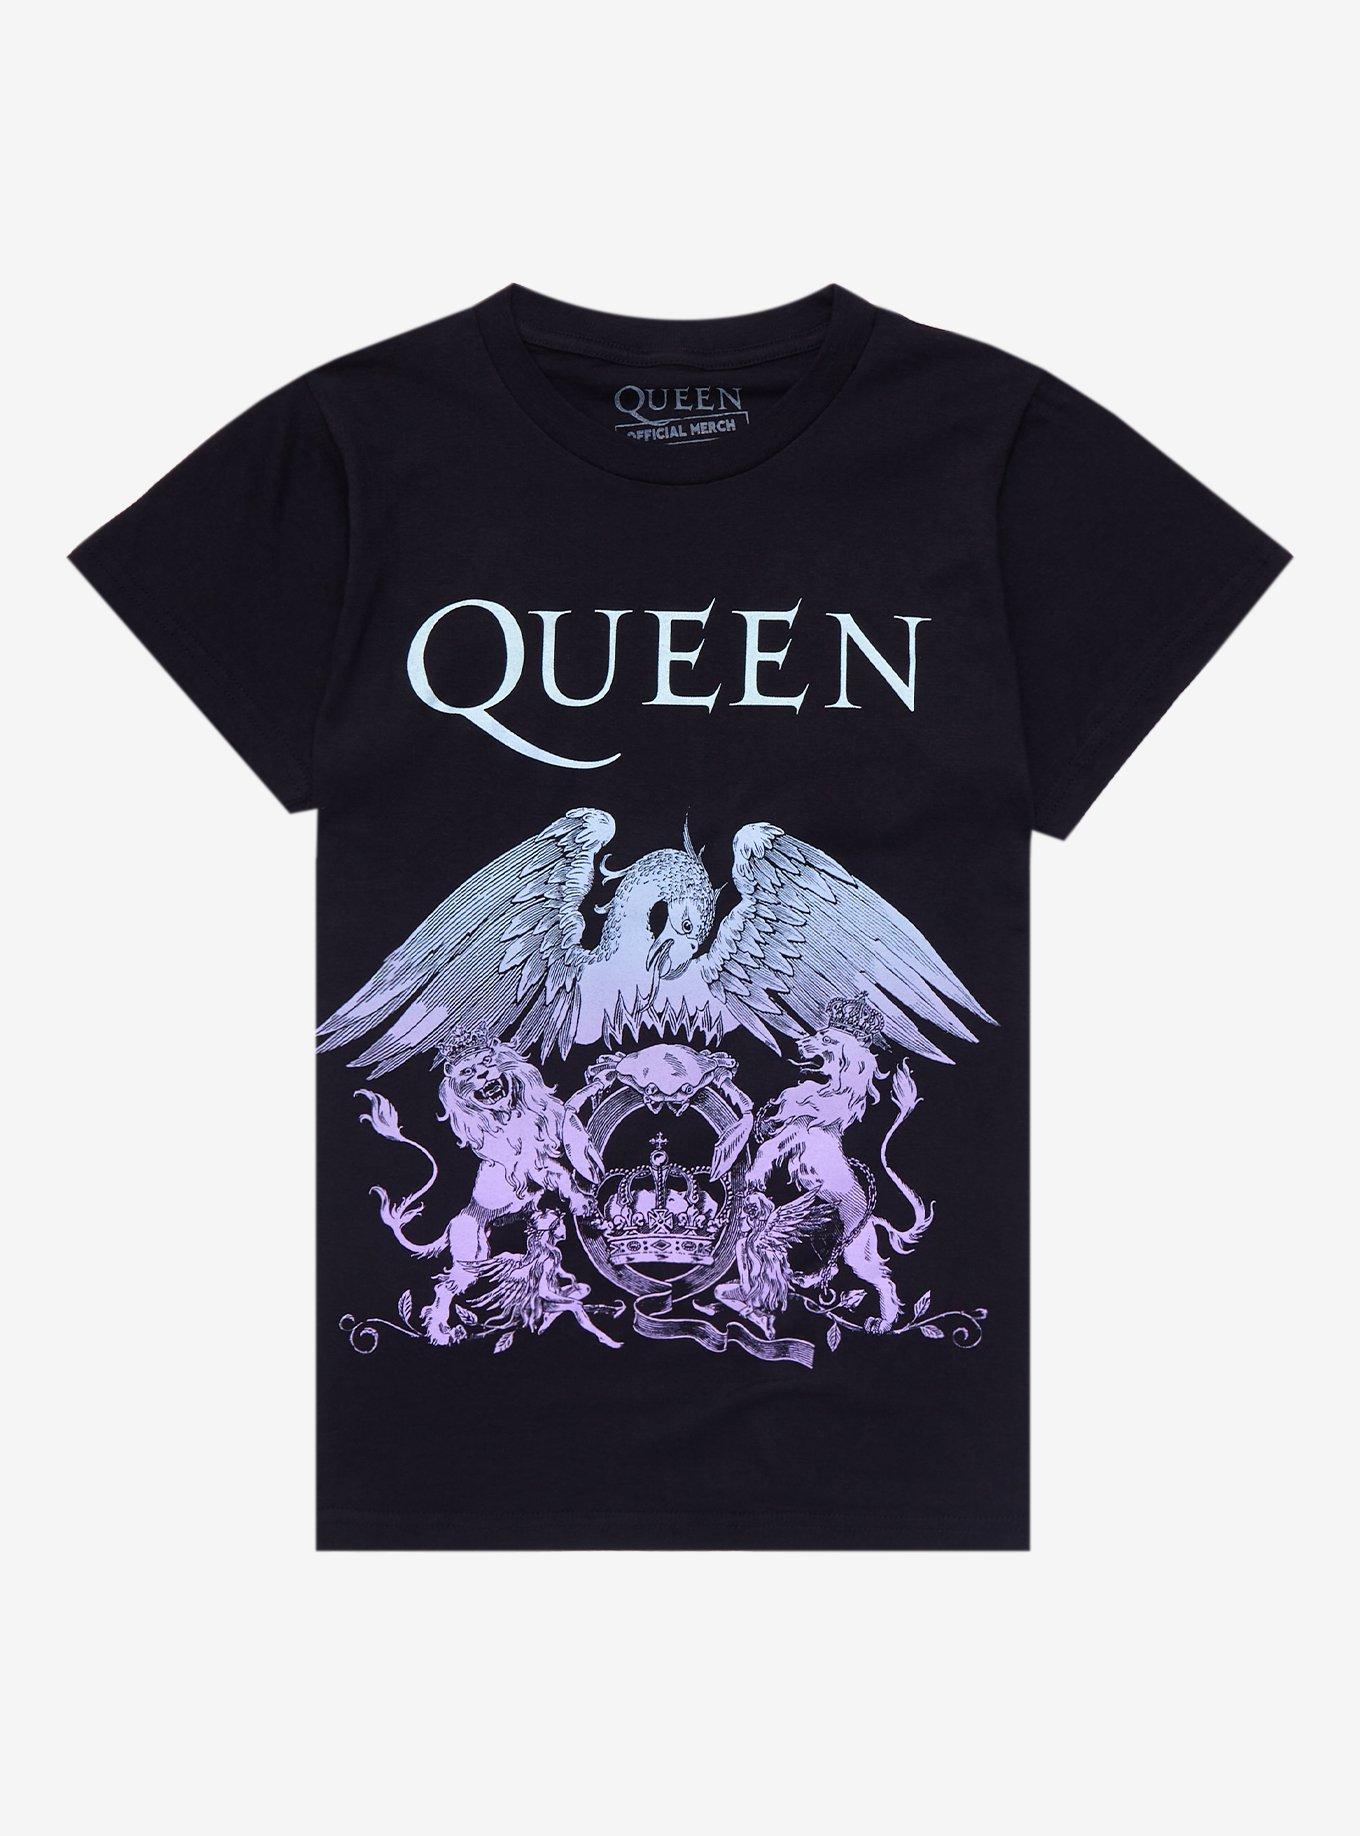 Queen Pastel Crest Boyfriend Fit Girls T-Shirt, BLACK, hi-res